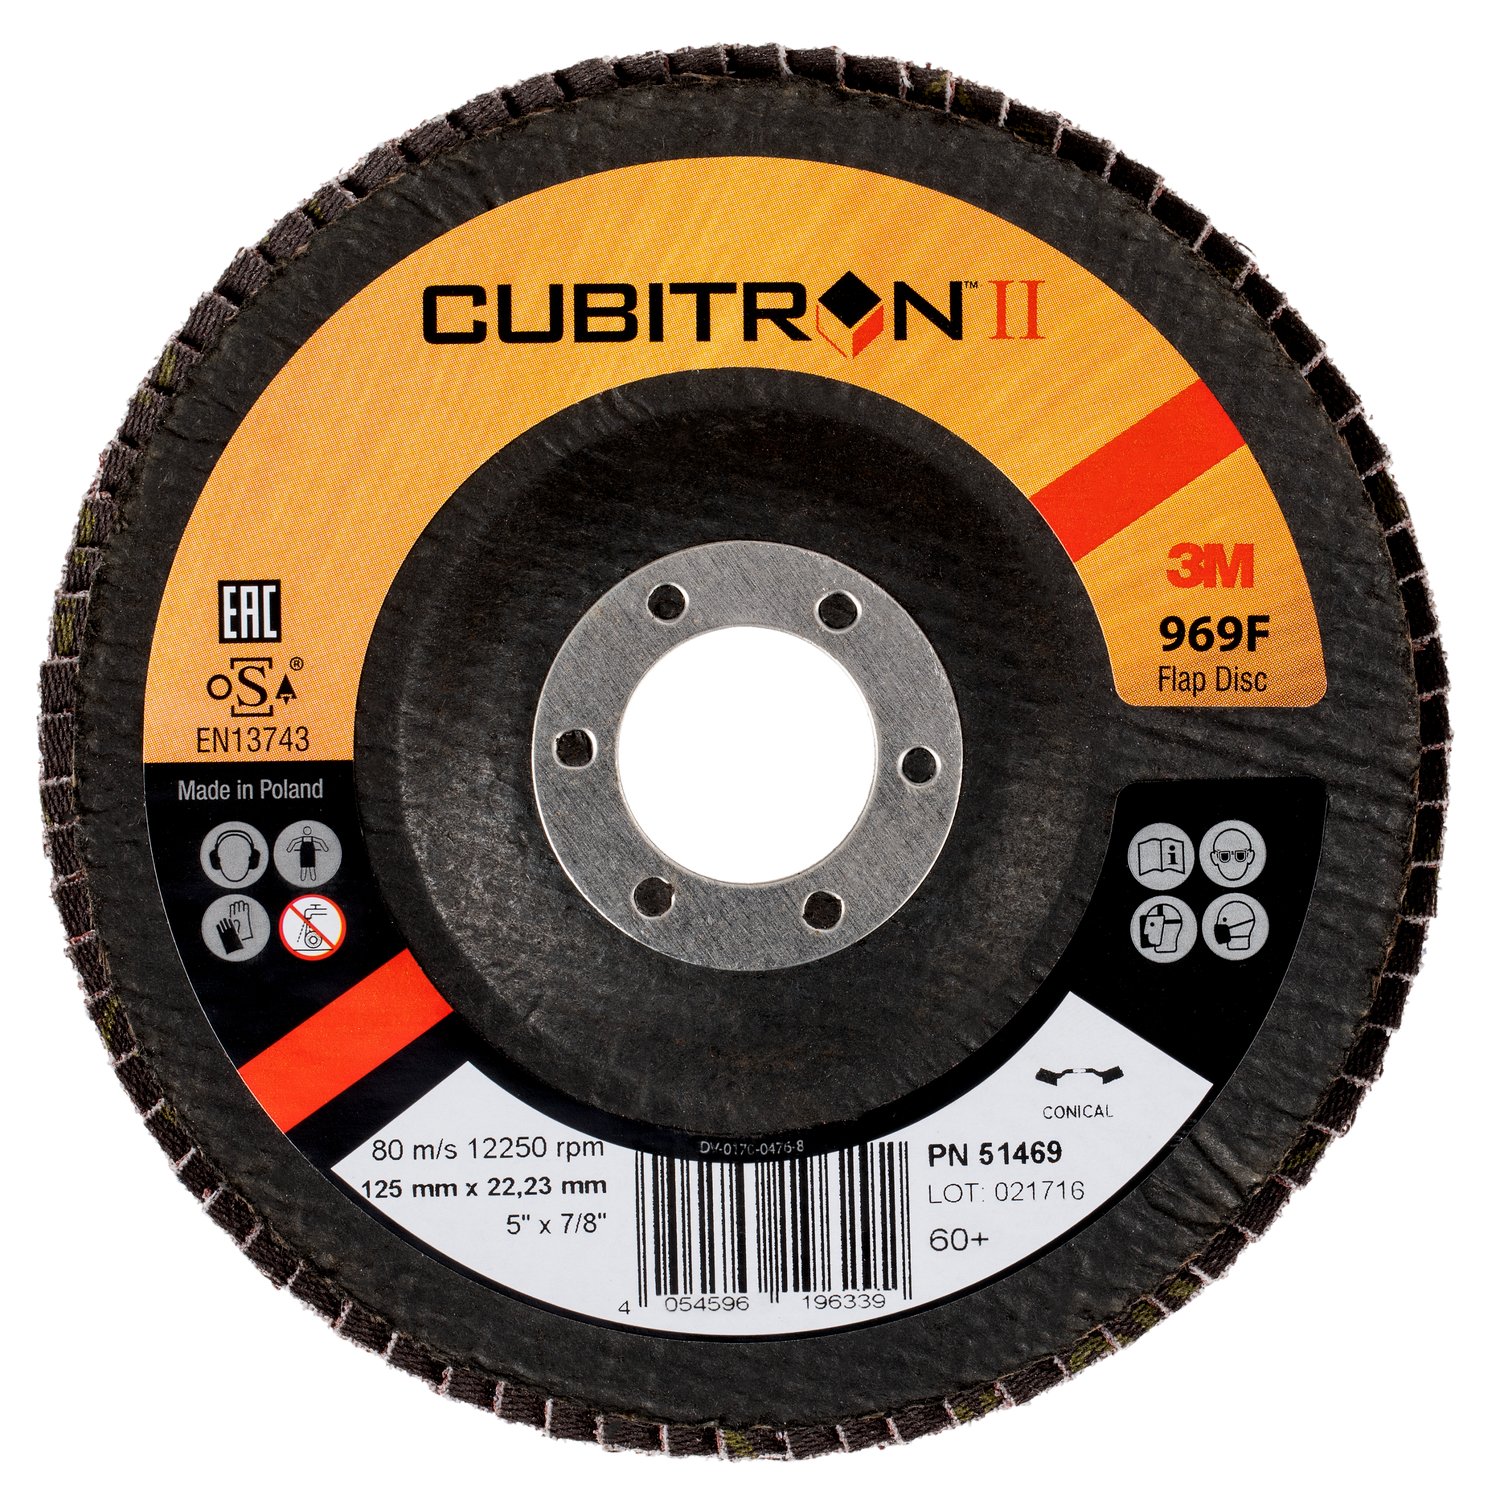 7100104886 - 3M Cubitron II Flap Disc 969F, 60+, T27, 5 in x 7/8 in, 10 ea/Case